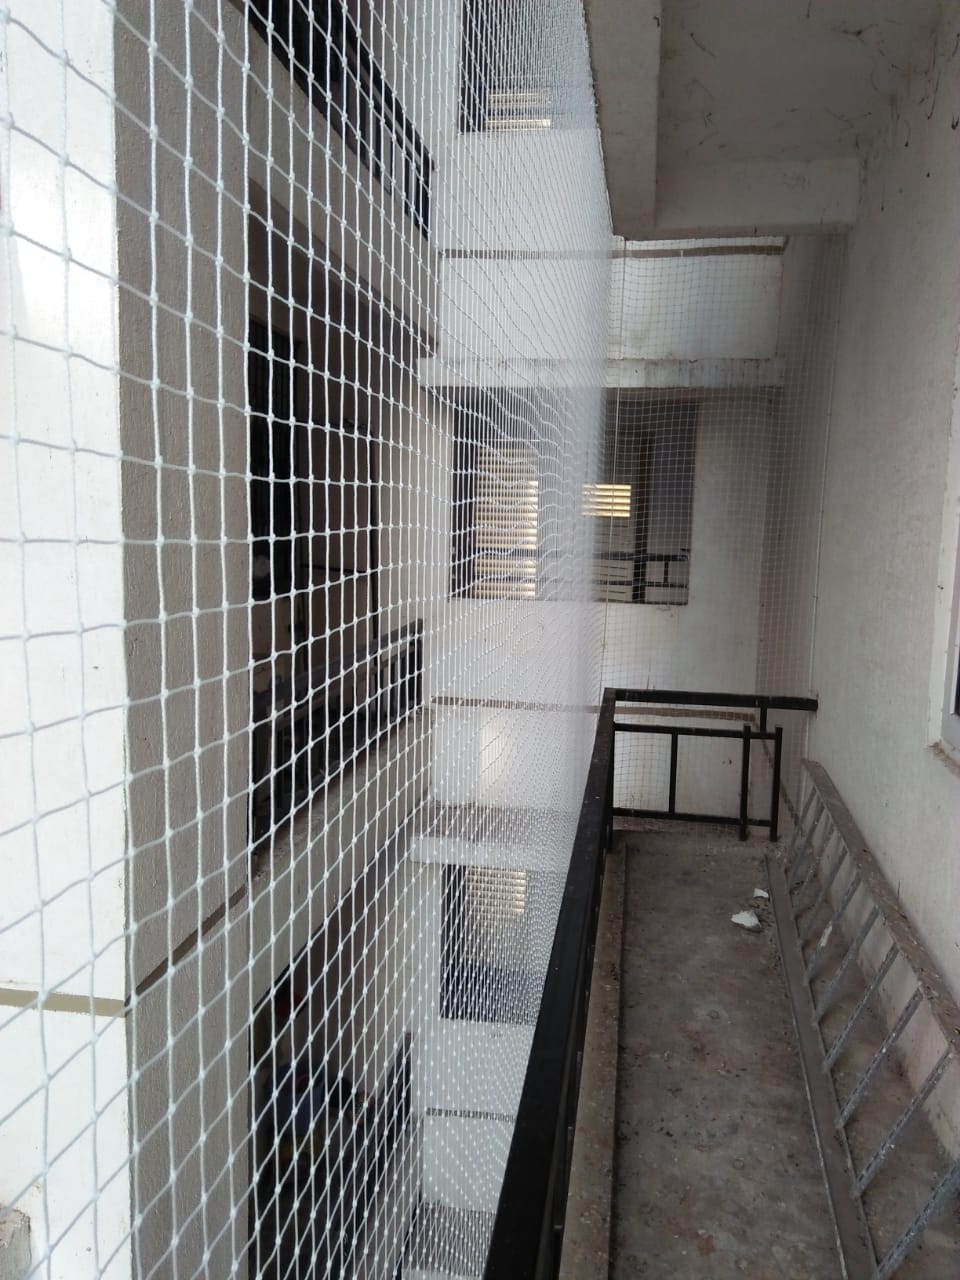 Balcony Safety Nets Durgam-cheruvu